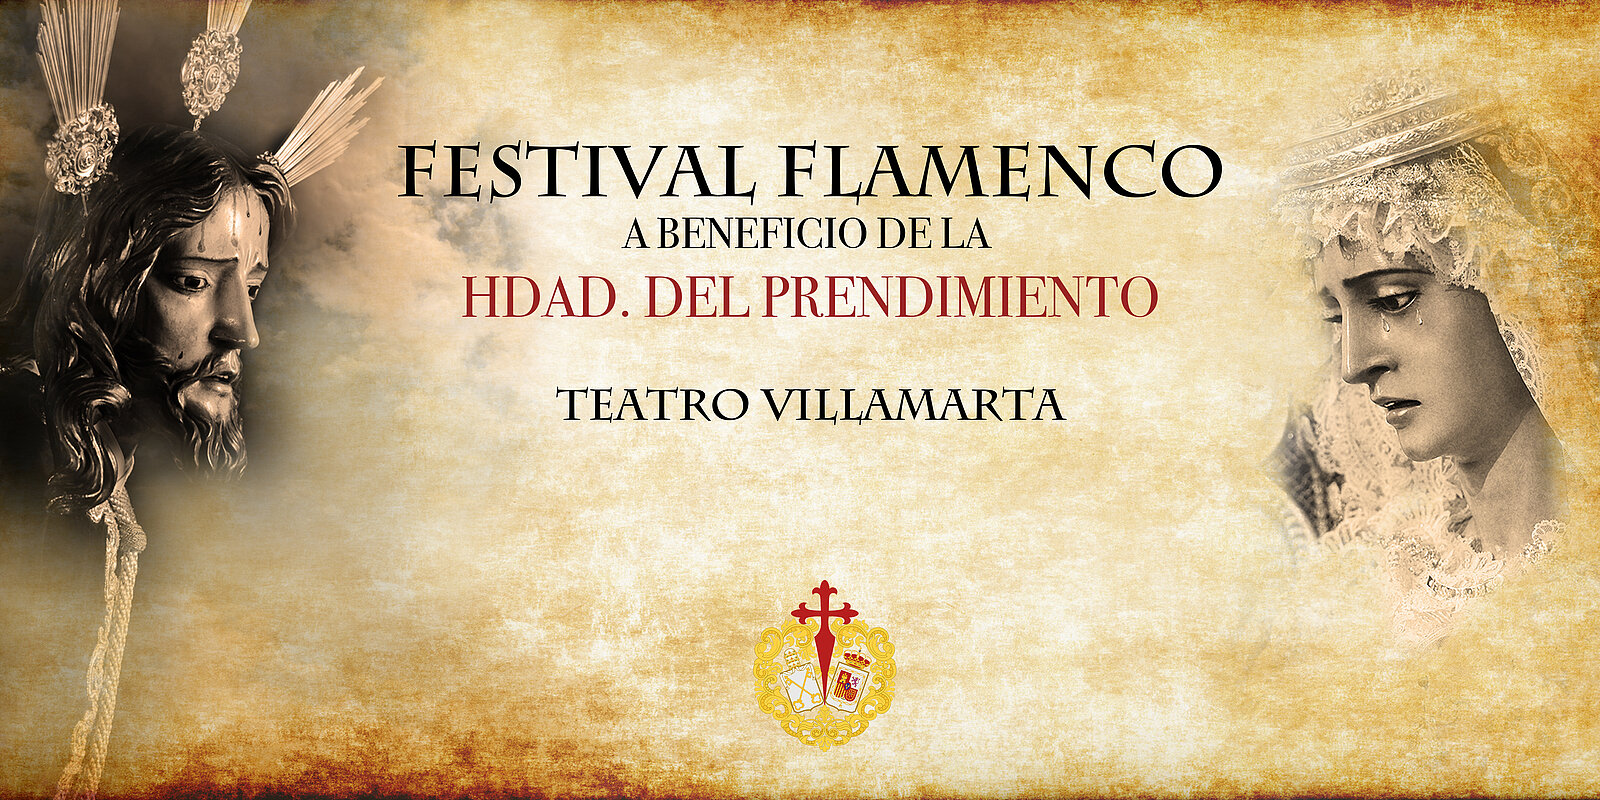 Festival Flamenco. Hermandad del Prendimiento